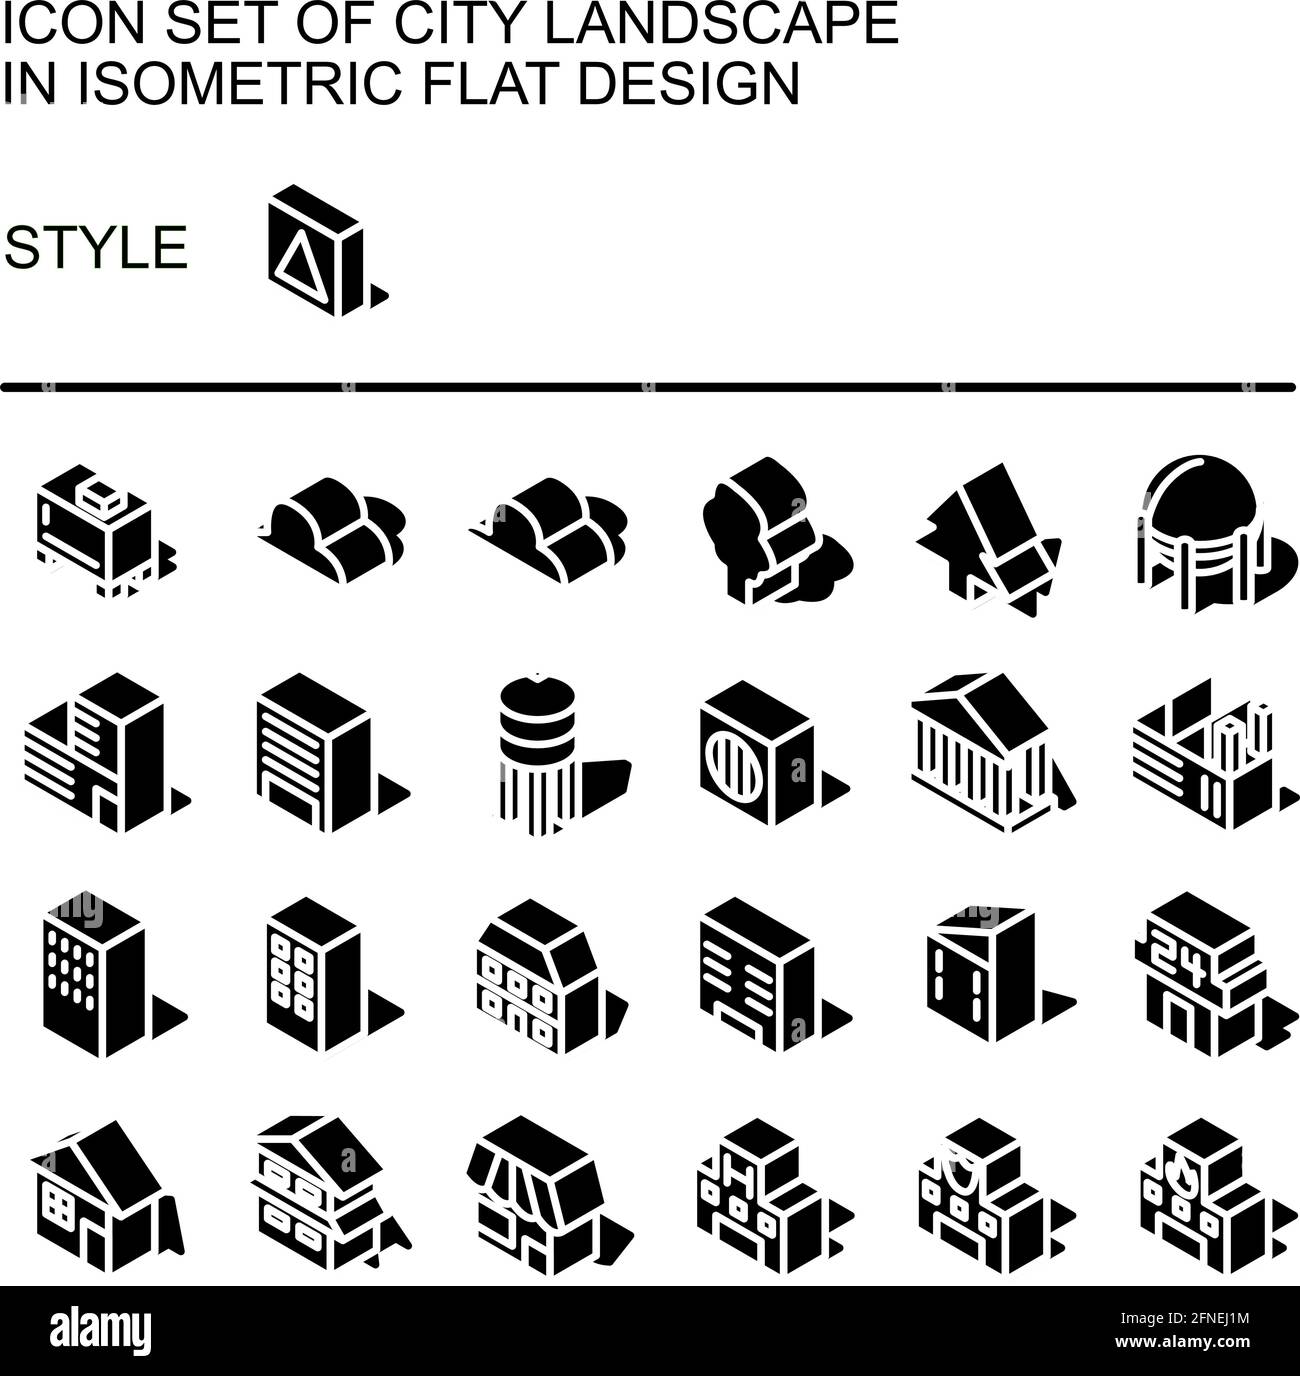 Icona del paesaggio urbano impostata in un design piatto isometrico con linee bianche, riempimenti neri, forma di un'ombra. Illustrazione Vettoriale